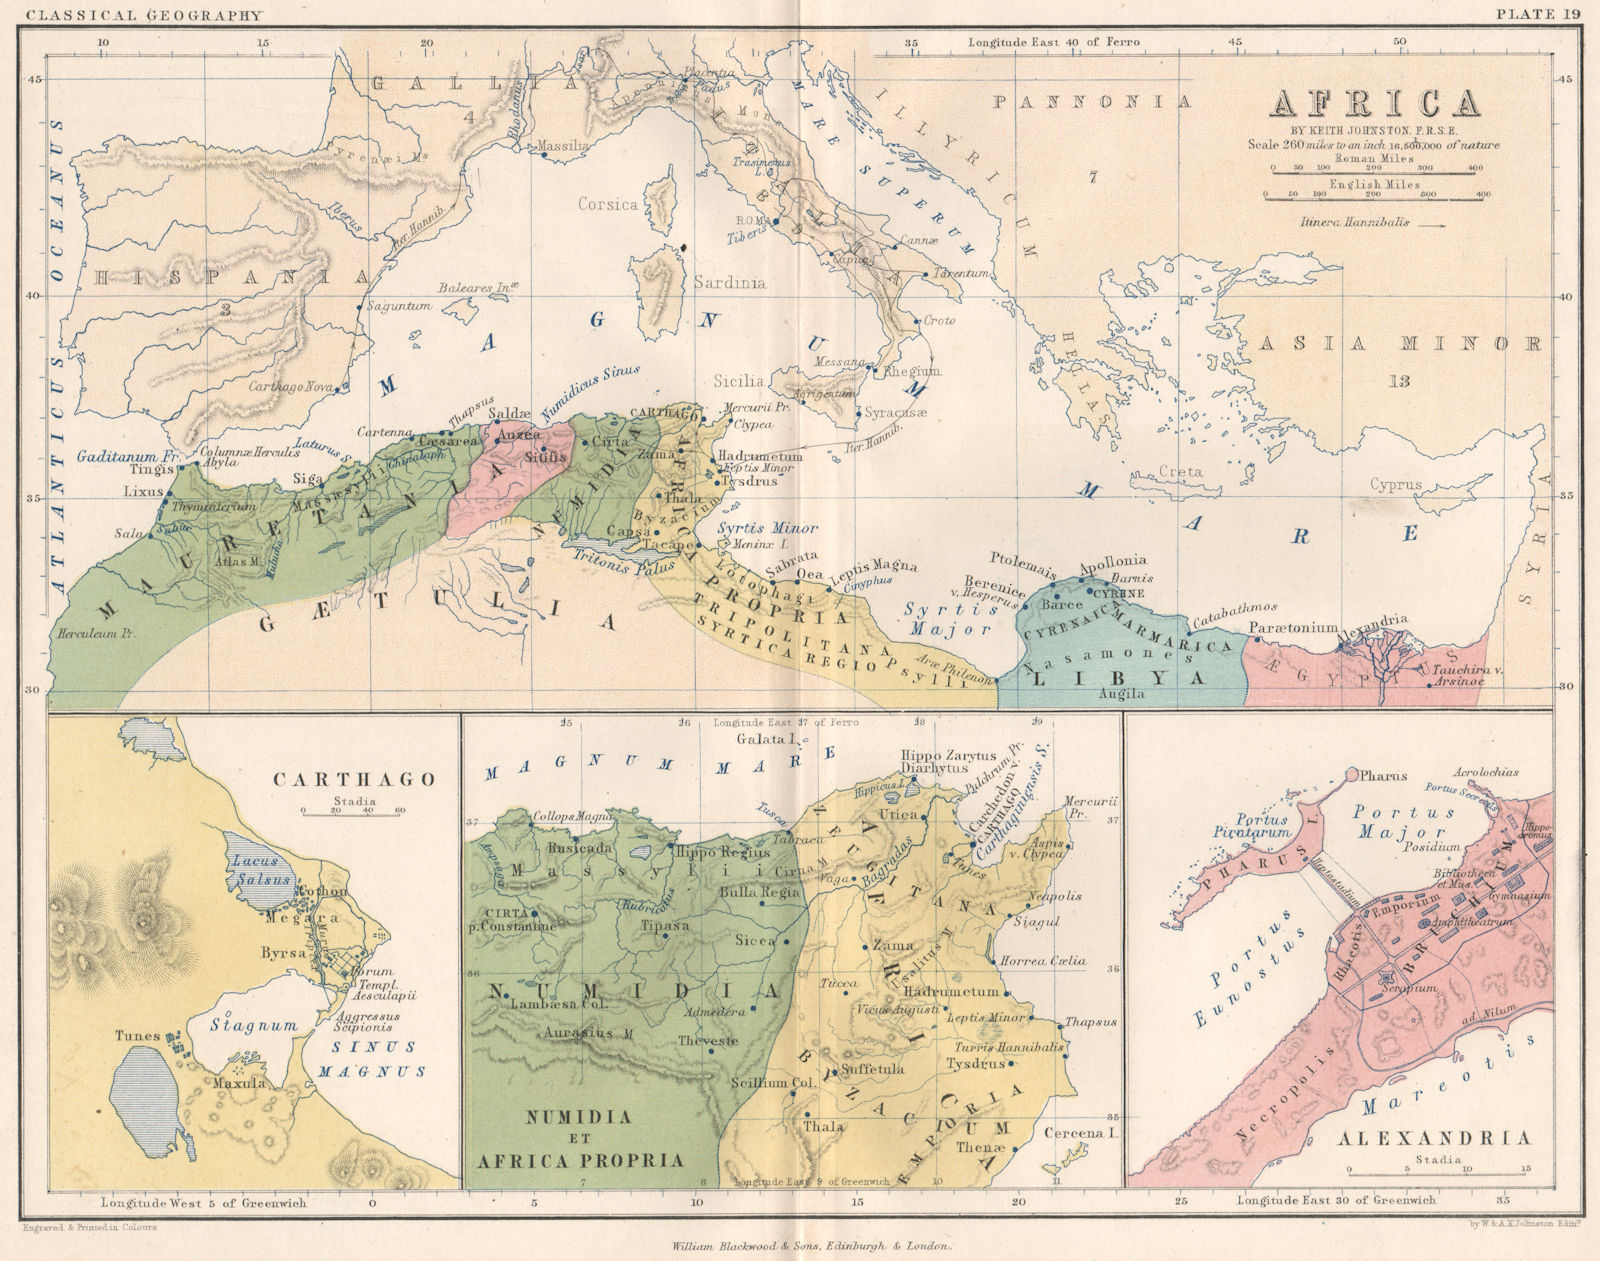 Ancient North Africa. Carthago. Numidia et Africa Propria. Alexandria 1855 map